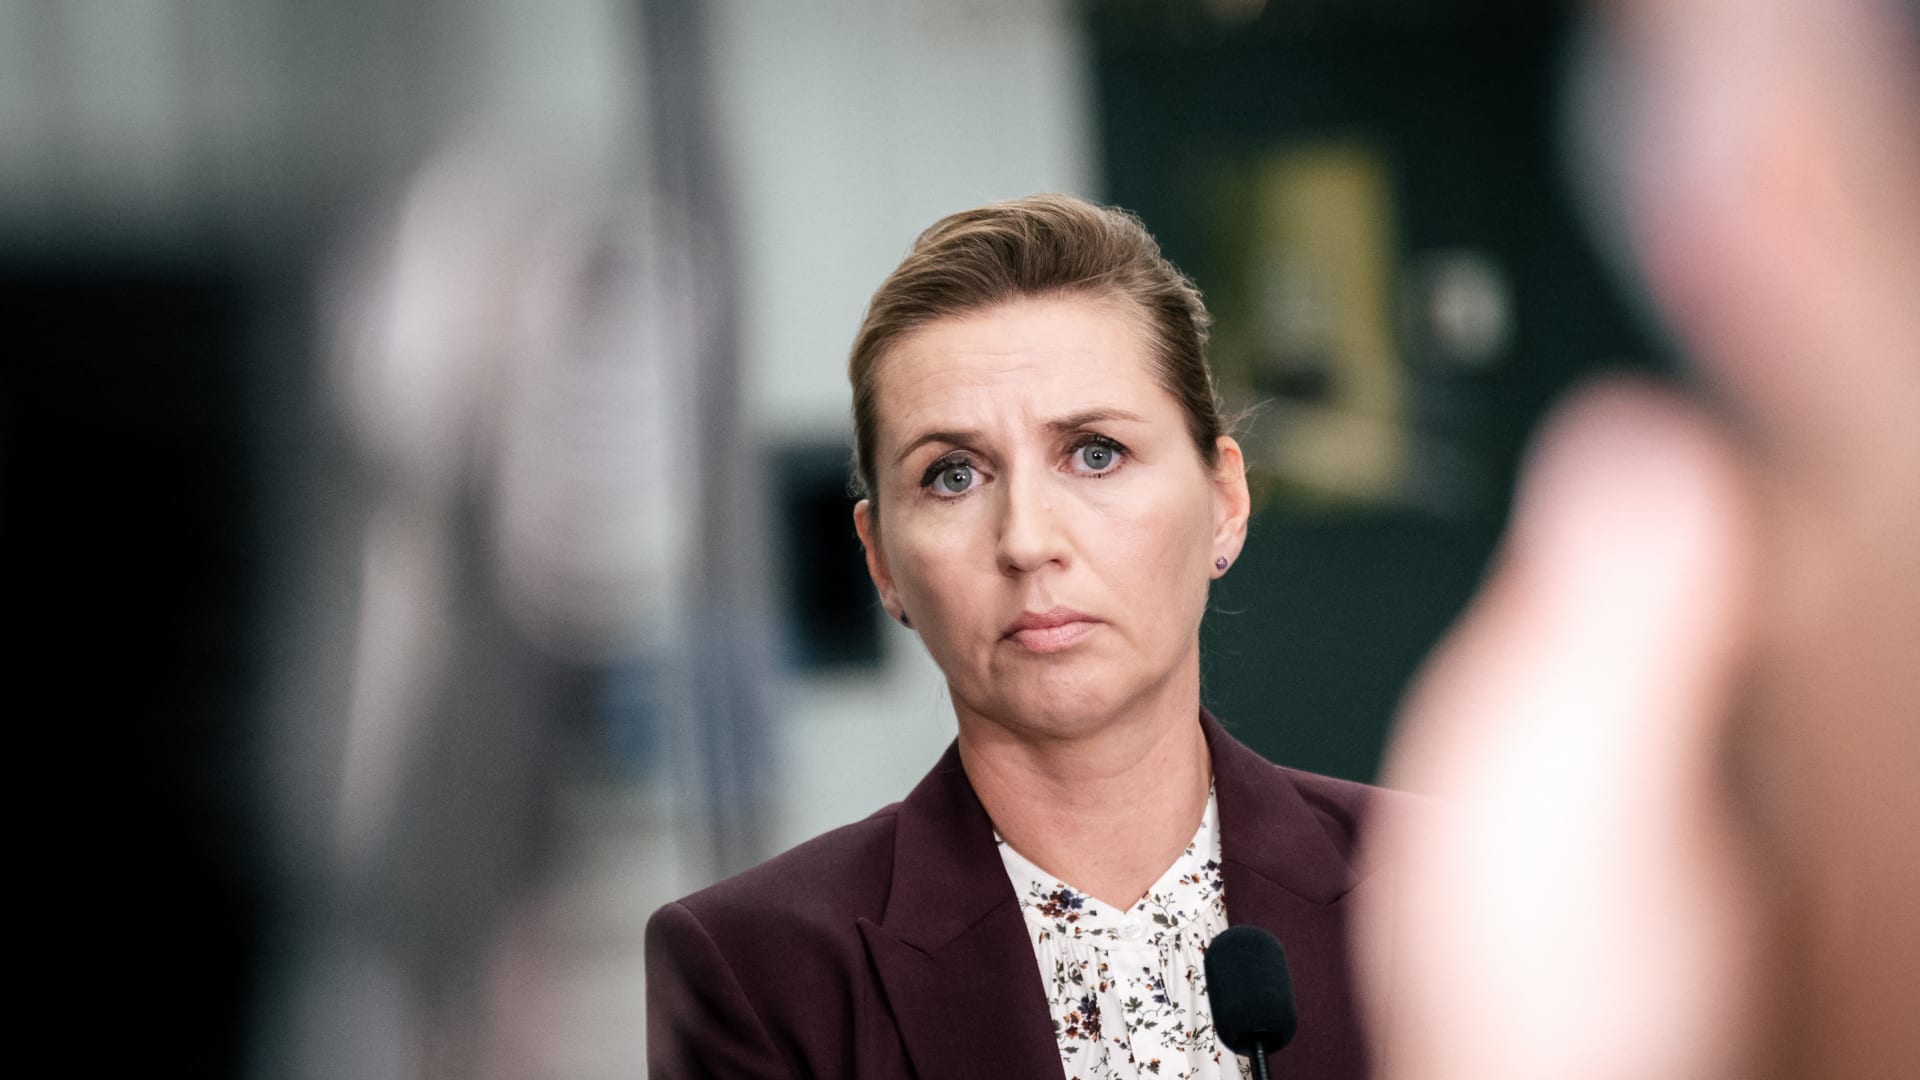 رئيسة وزراء الدنمارك تعلق على تسريبات "نورد ستريم".. هل تعتبره إعلان حرب؟